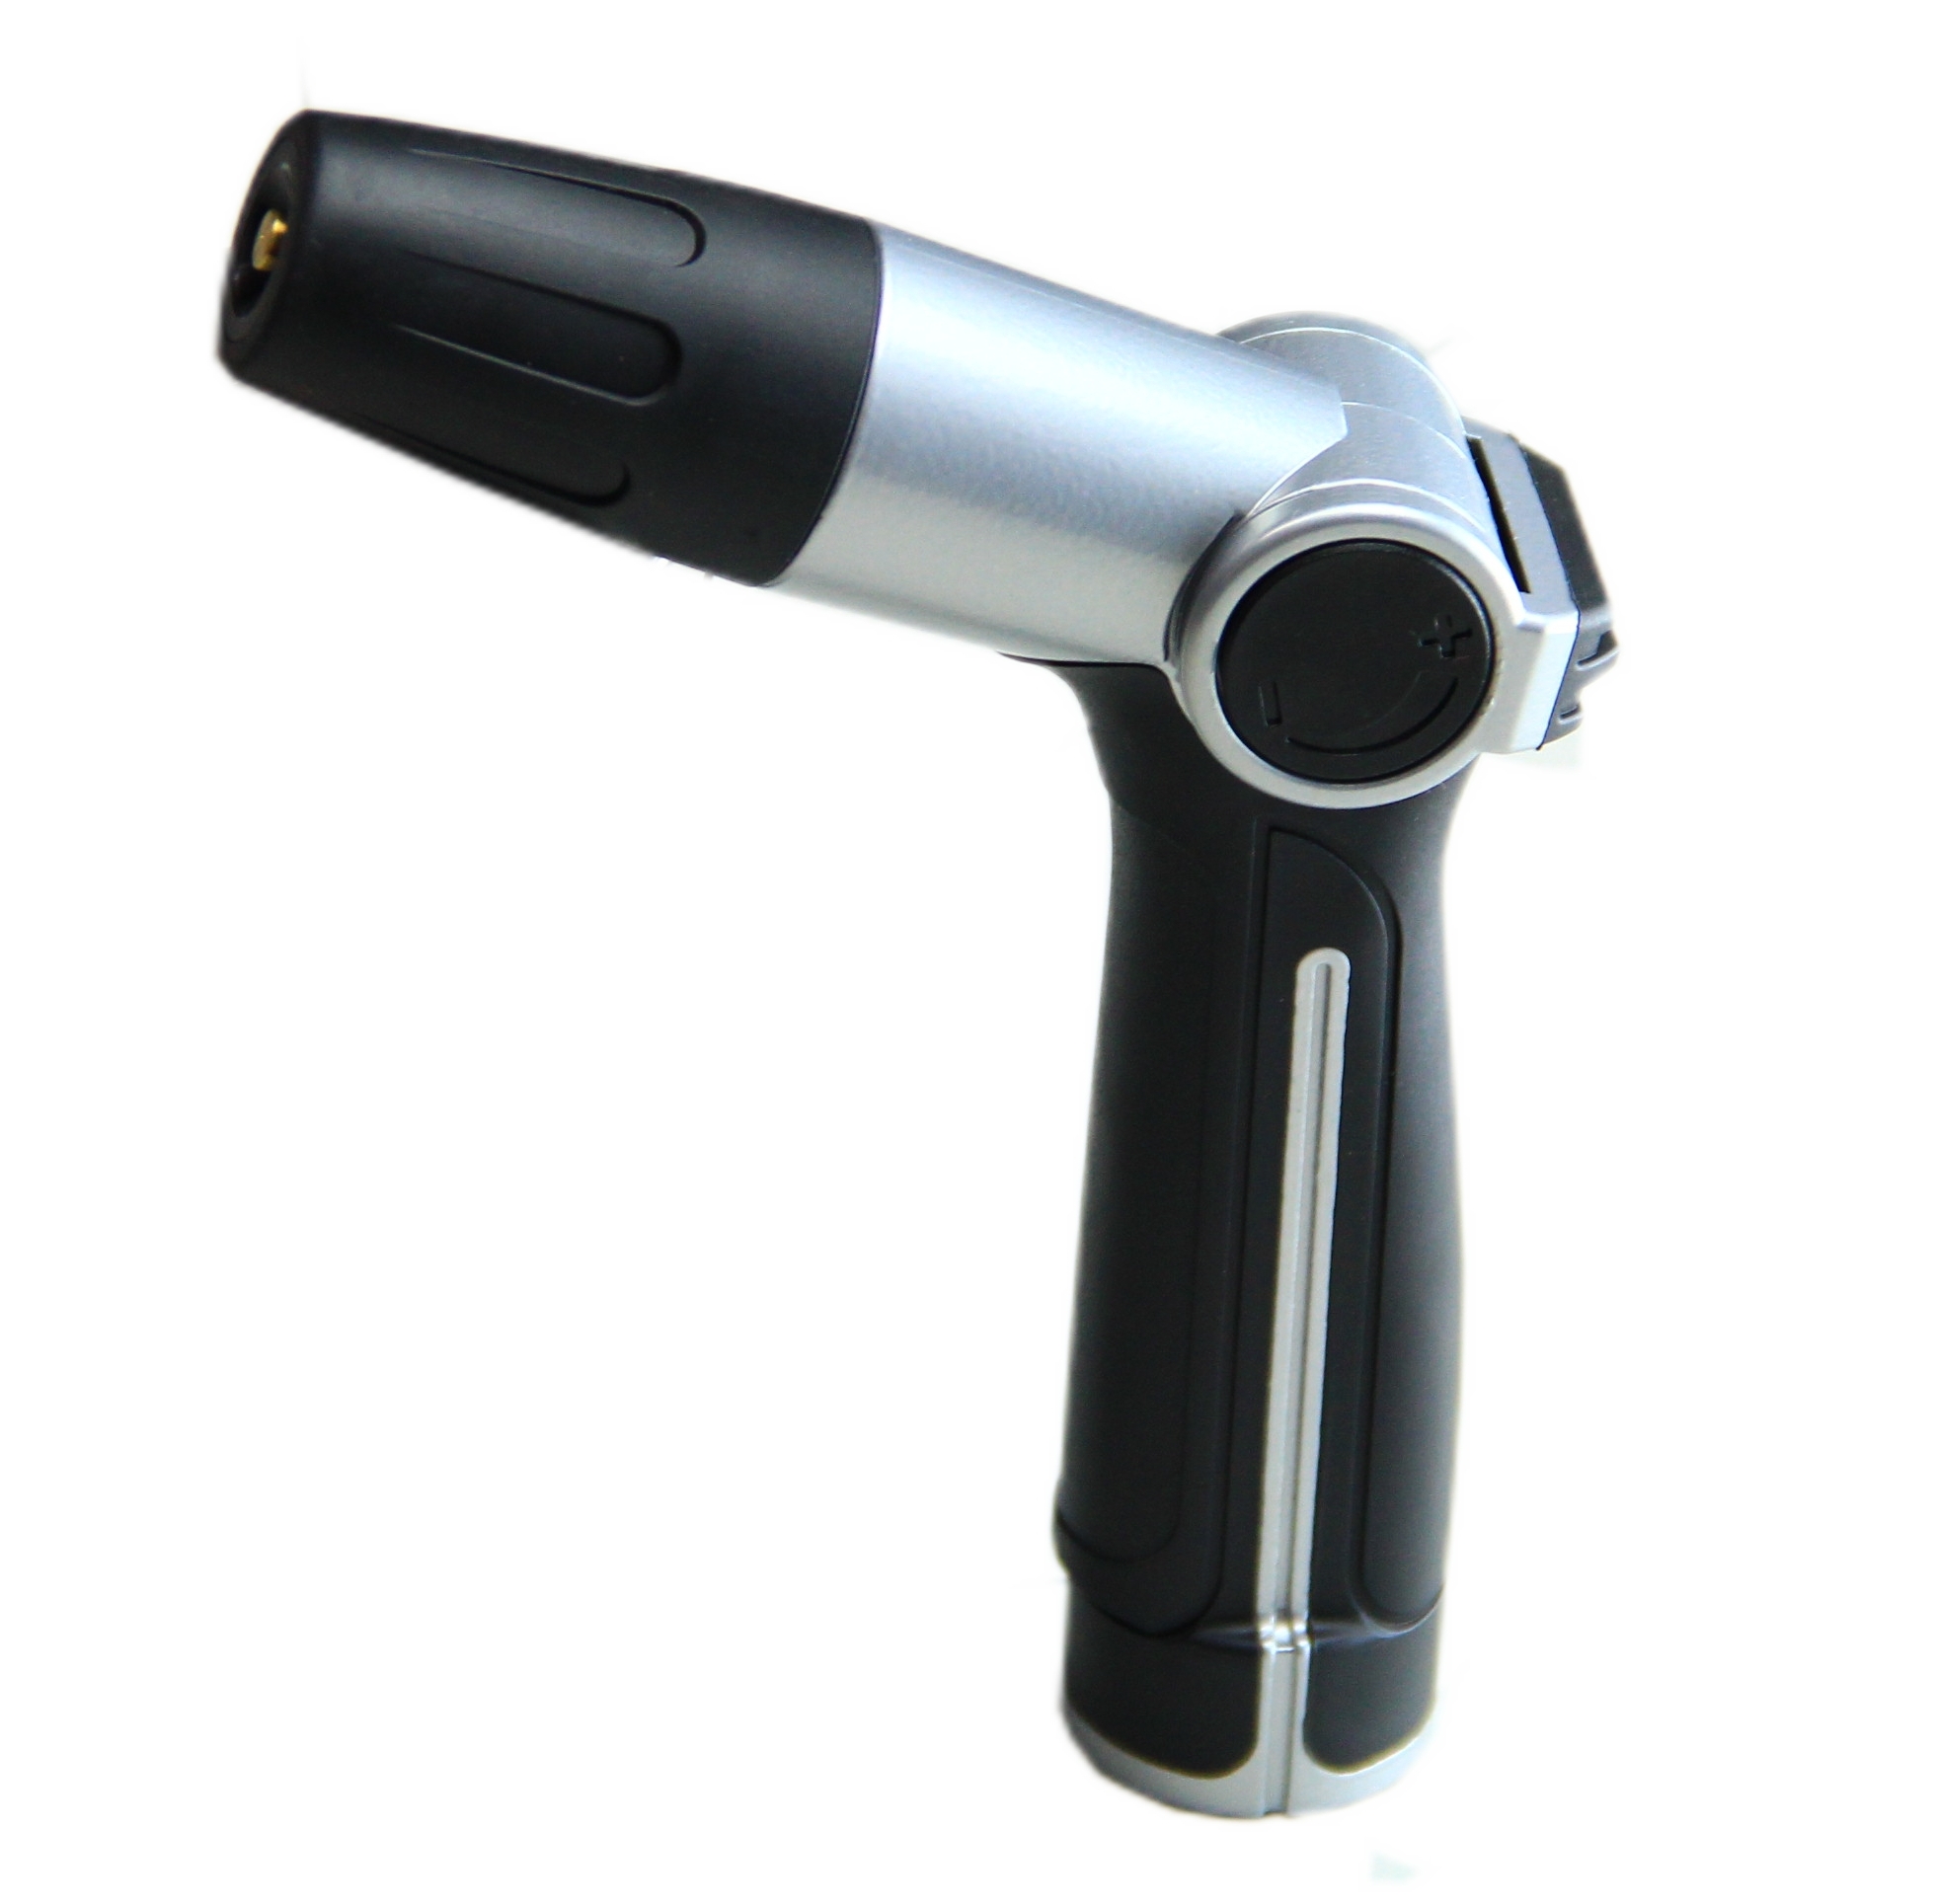 Adjustable Metal Spray Nozzle